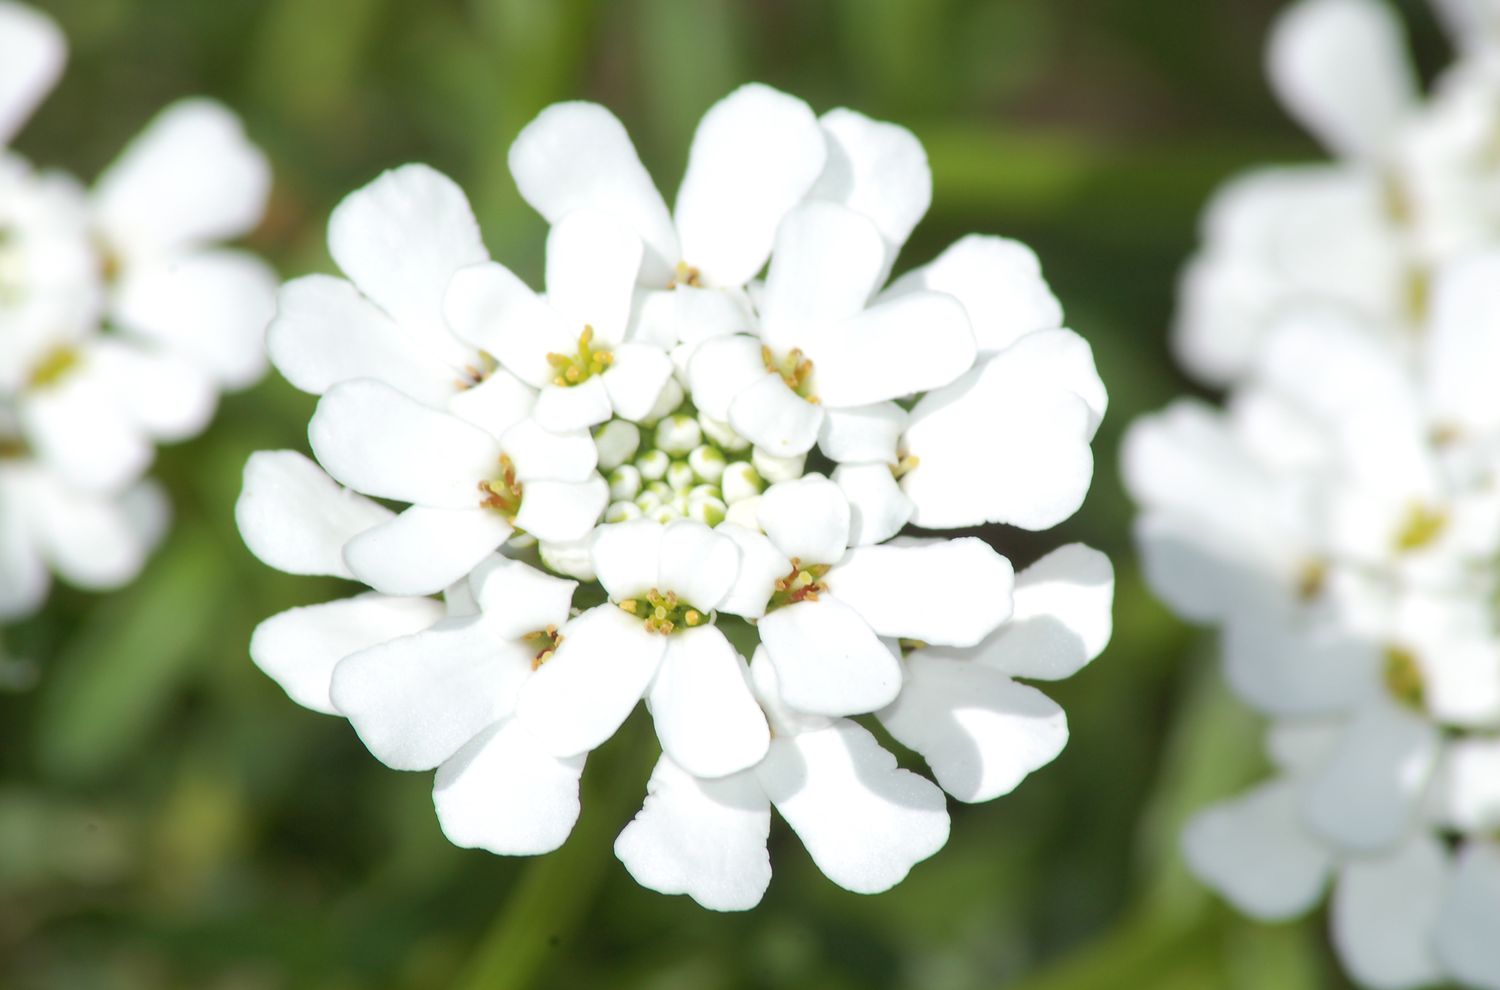 La fleur de Candytuft (image) a un motif de pétales intéressant. C'est une plante vivace blanche.